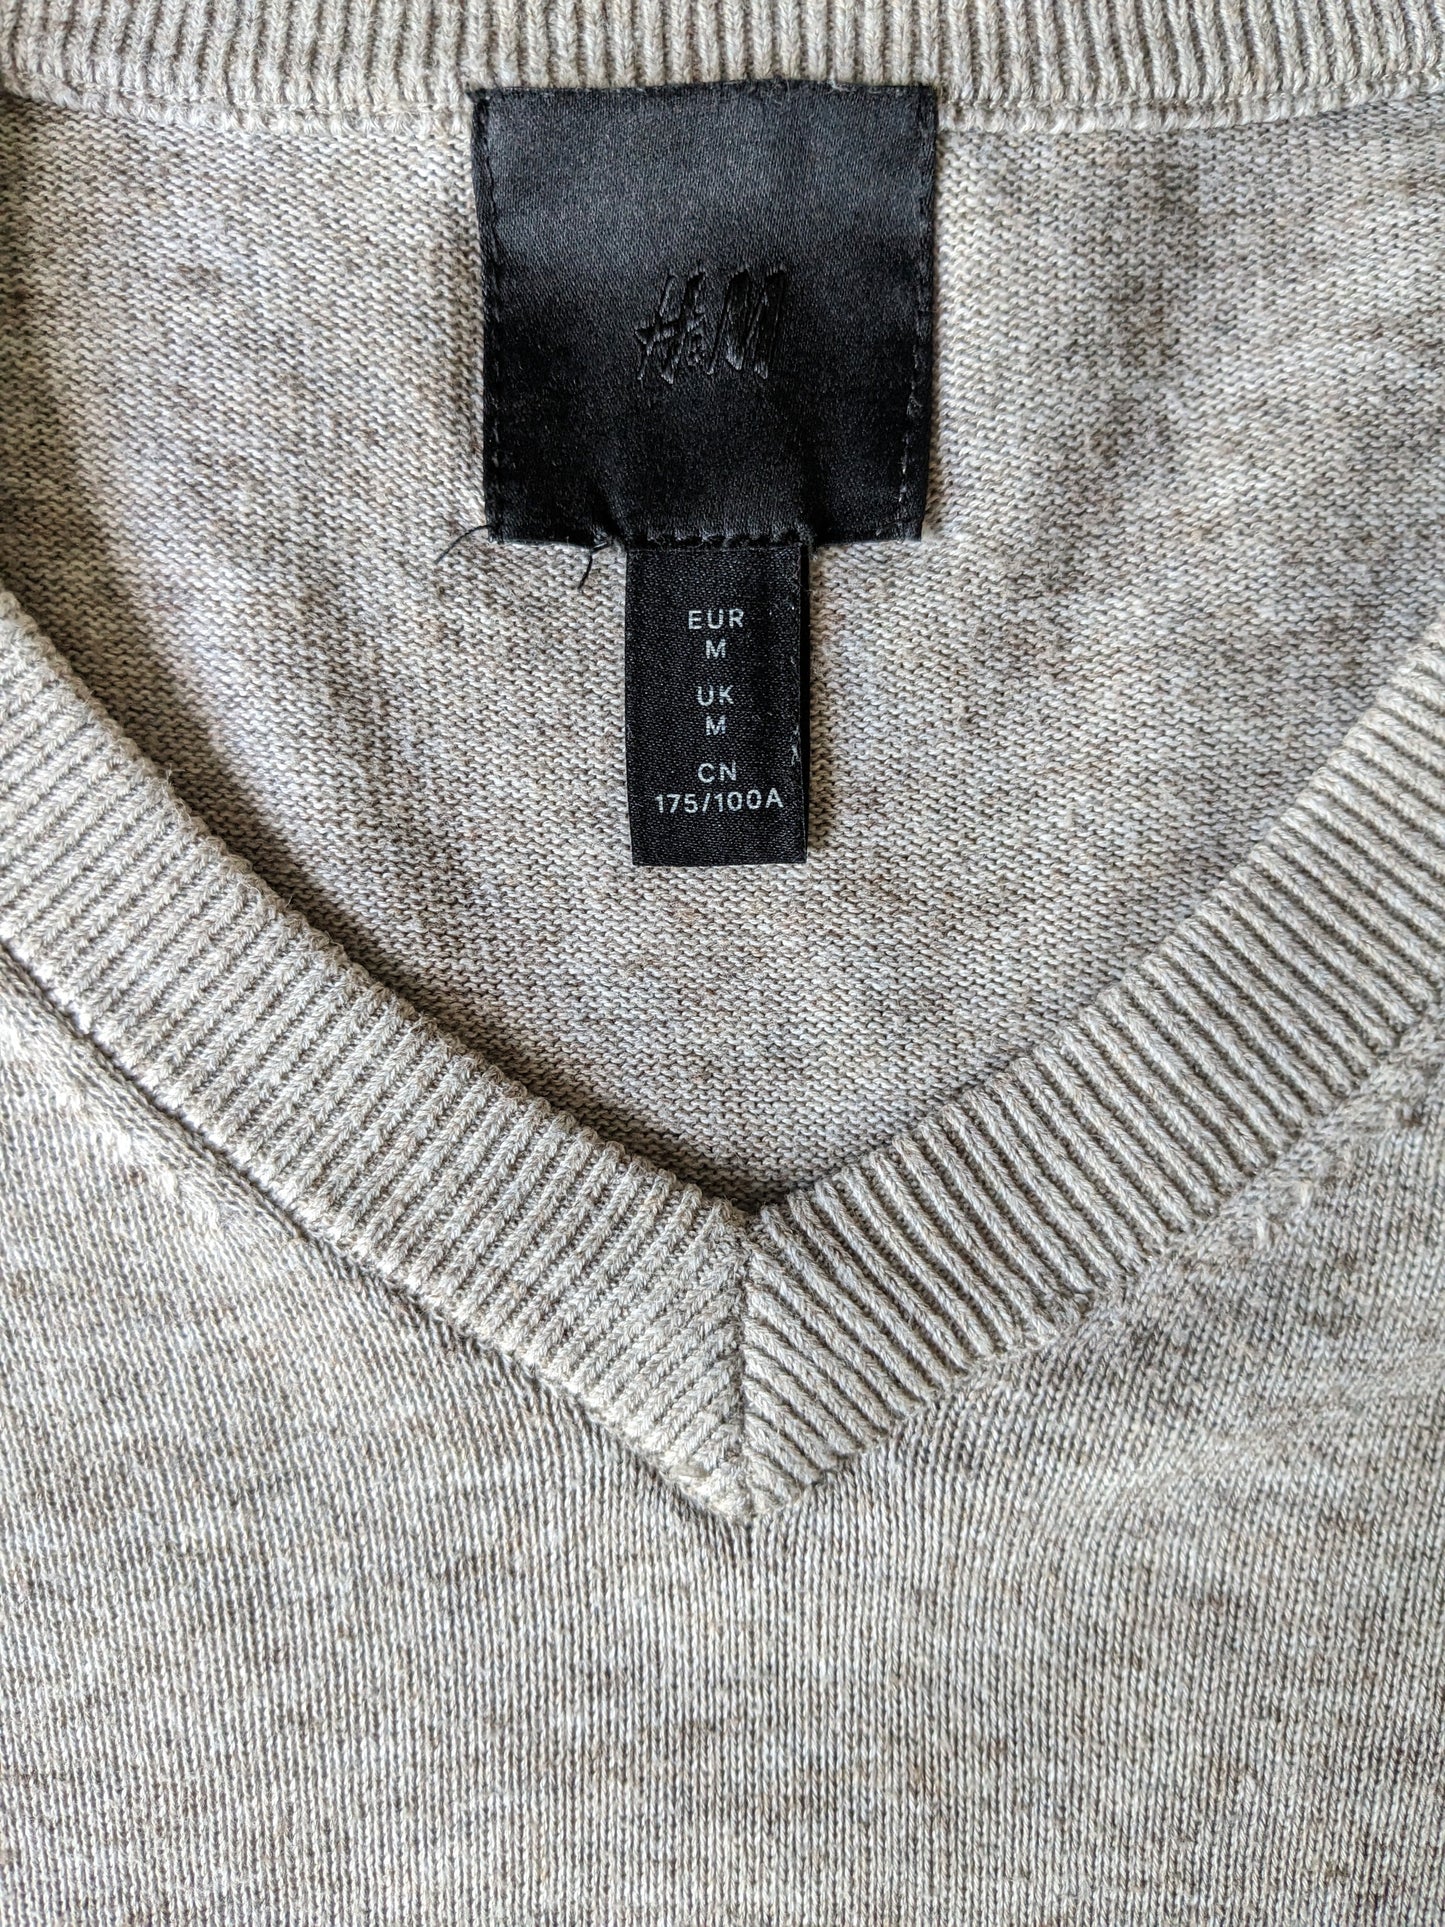 H & M-Pullover mit V-Ausschnitt. Beige Brown gemischt. Größe M.